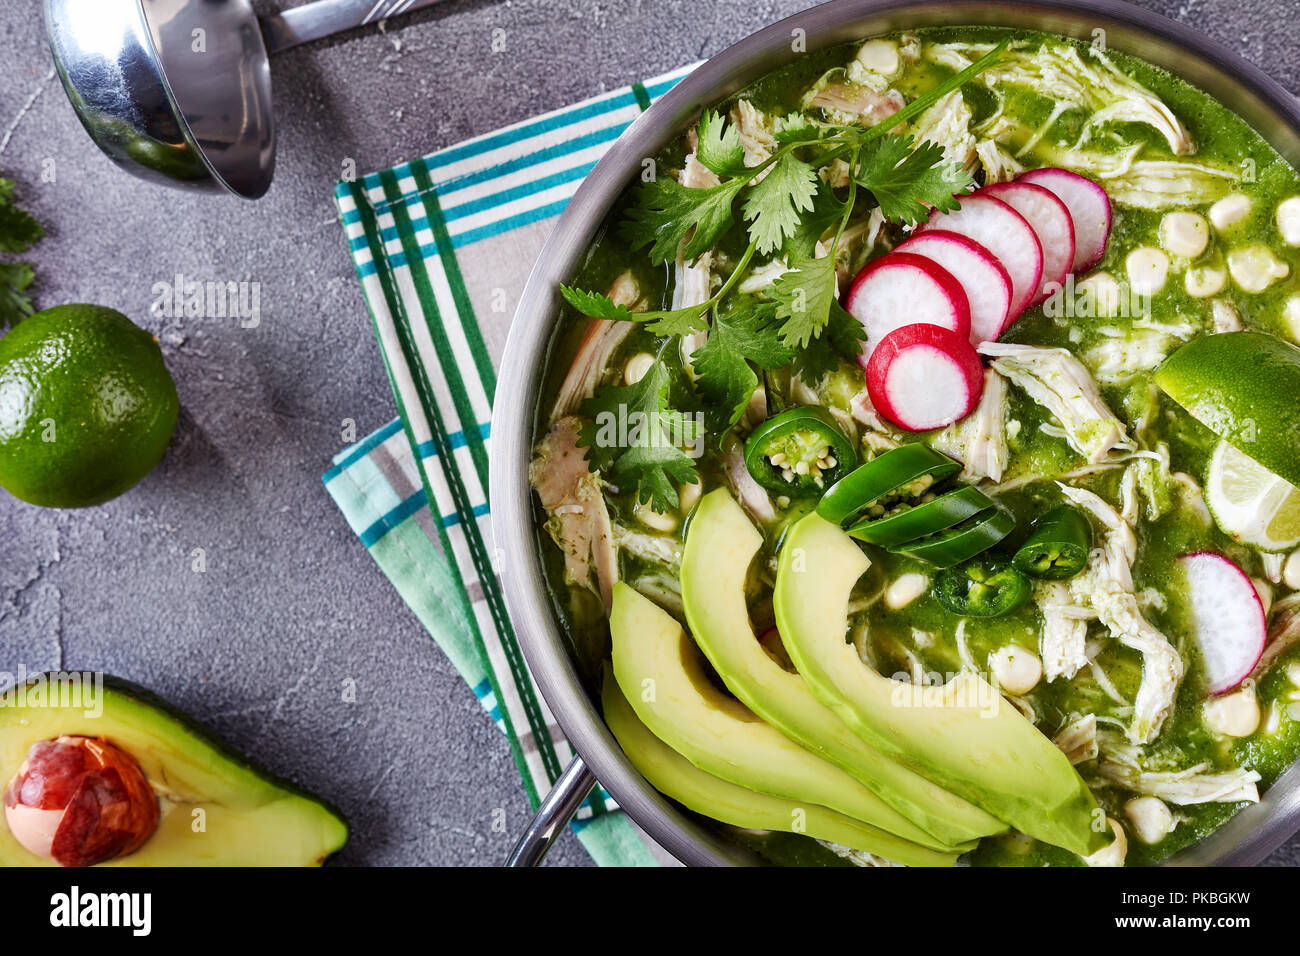 Draufsicht des Huhns Pozole Verde in einem Topf-mexikanischen Eintopf gefüllt mit Hühnerfleisch und hominy in einem warmen grünen Chile Brühe garniert mit radis Stockfoto